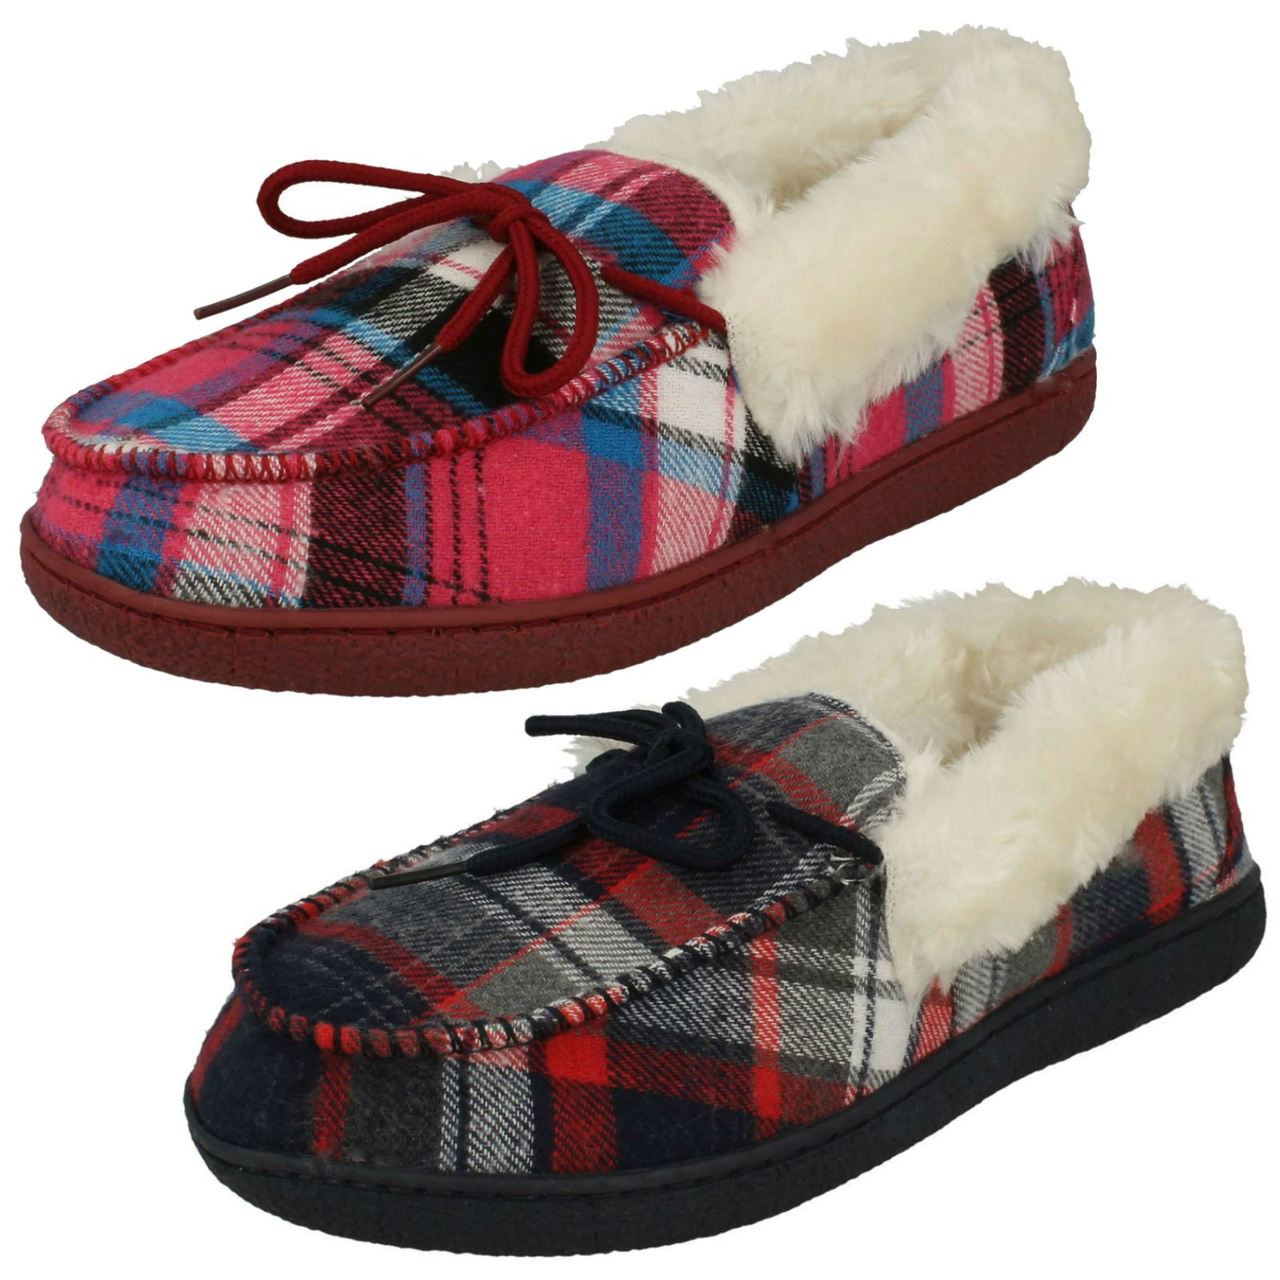 cushion walk slippers